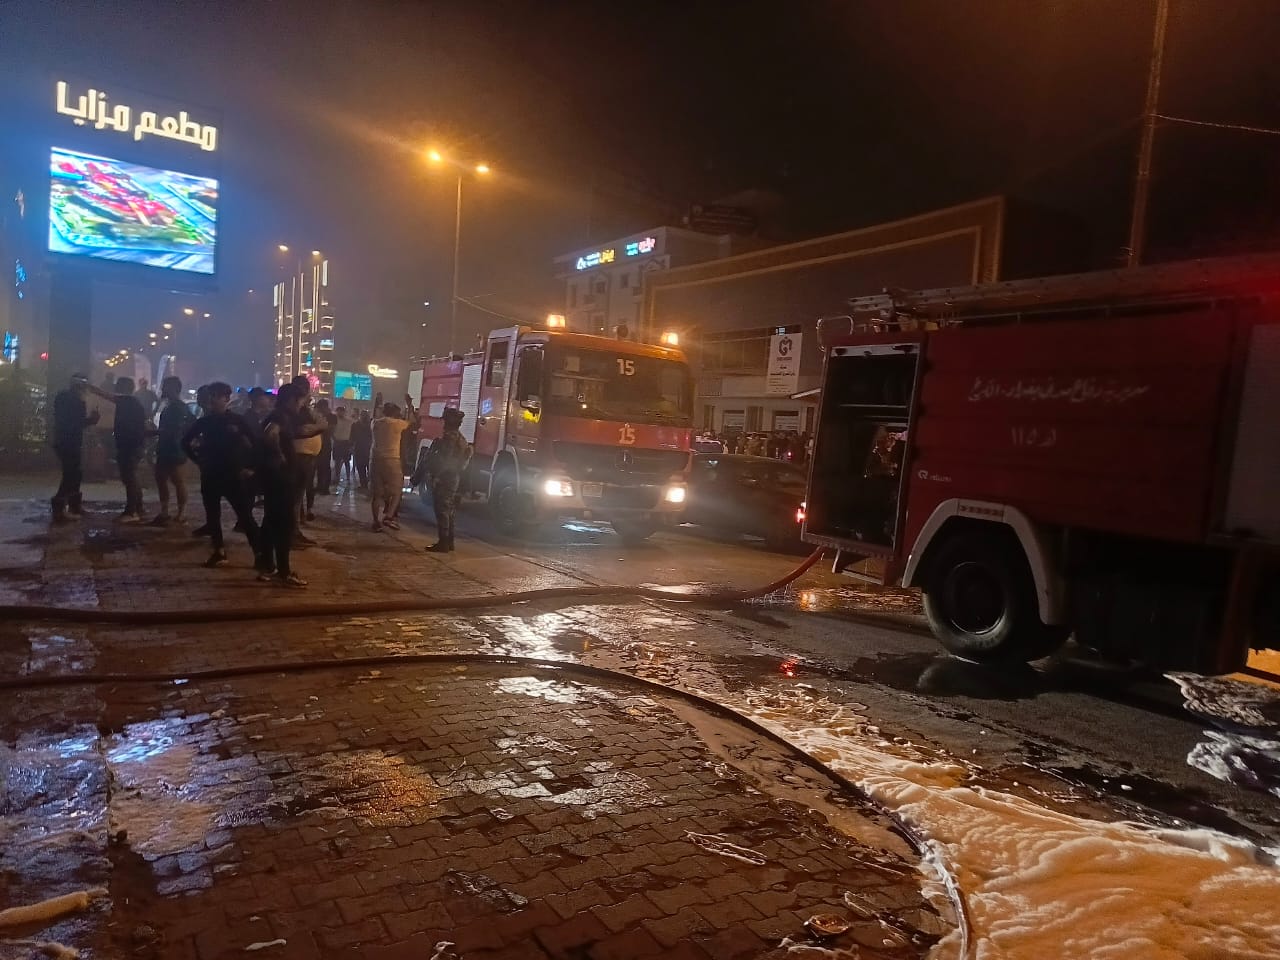 الدفاع المدني يخمد حريق داخل مطعم "جيل هاوس" في بغداد